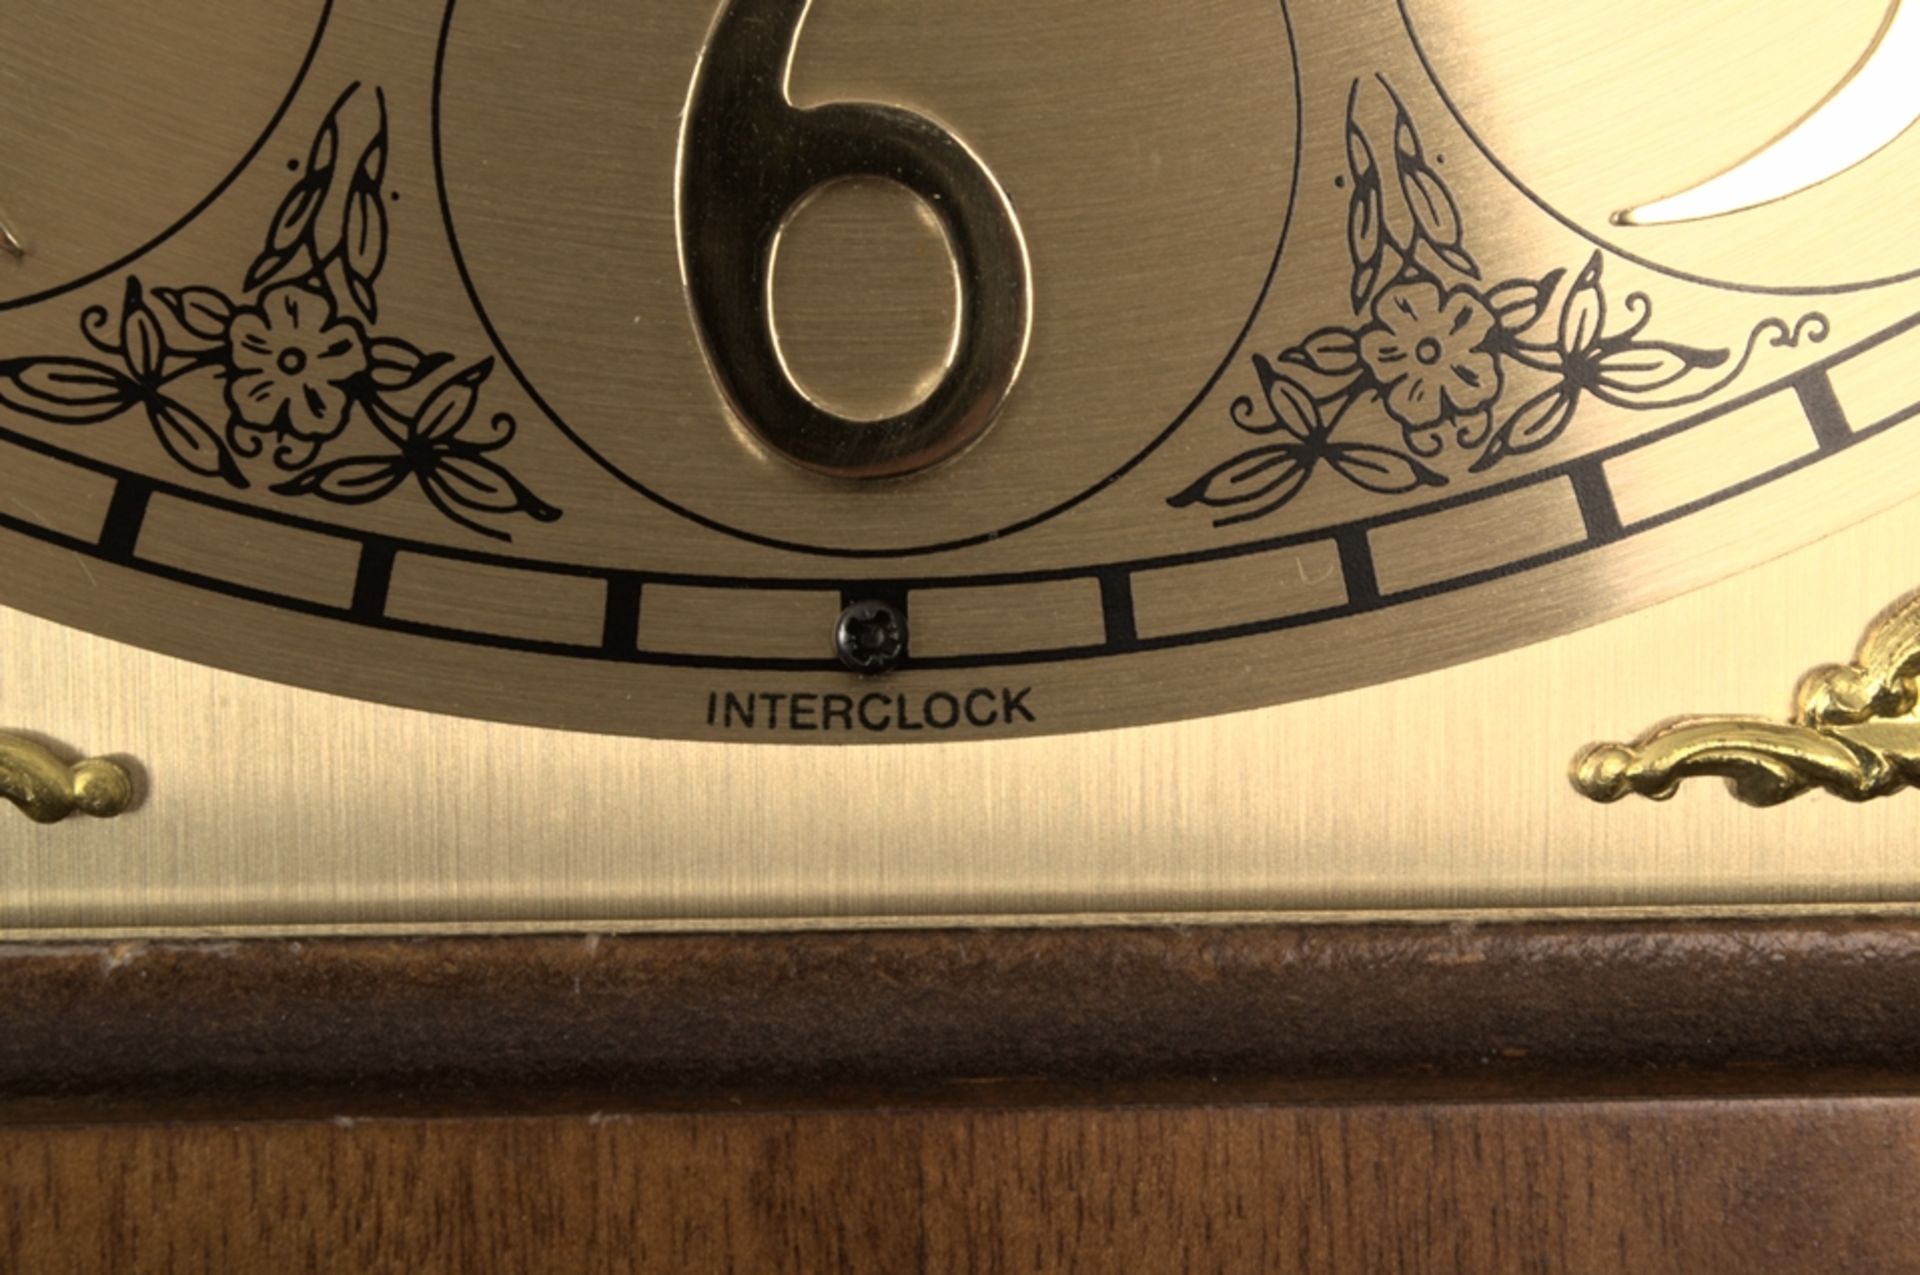 Große Bodenstanduhr der Marke "Interclock", dreigewichtiges, mechanisches Uhrwerk, dreiseitig - Bild 10 aus 12